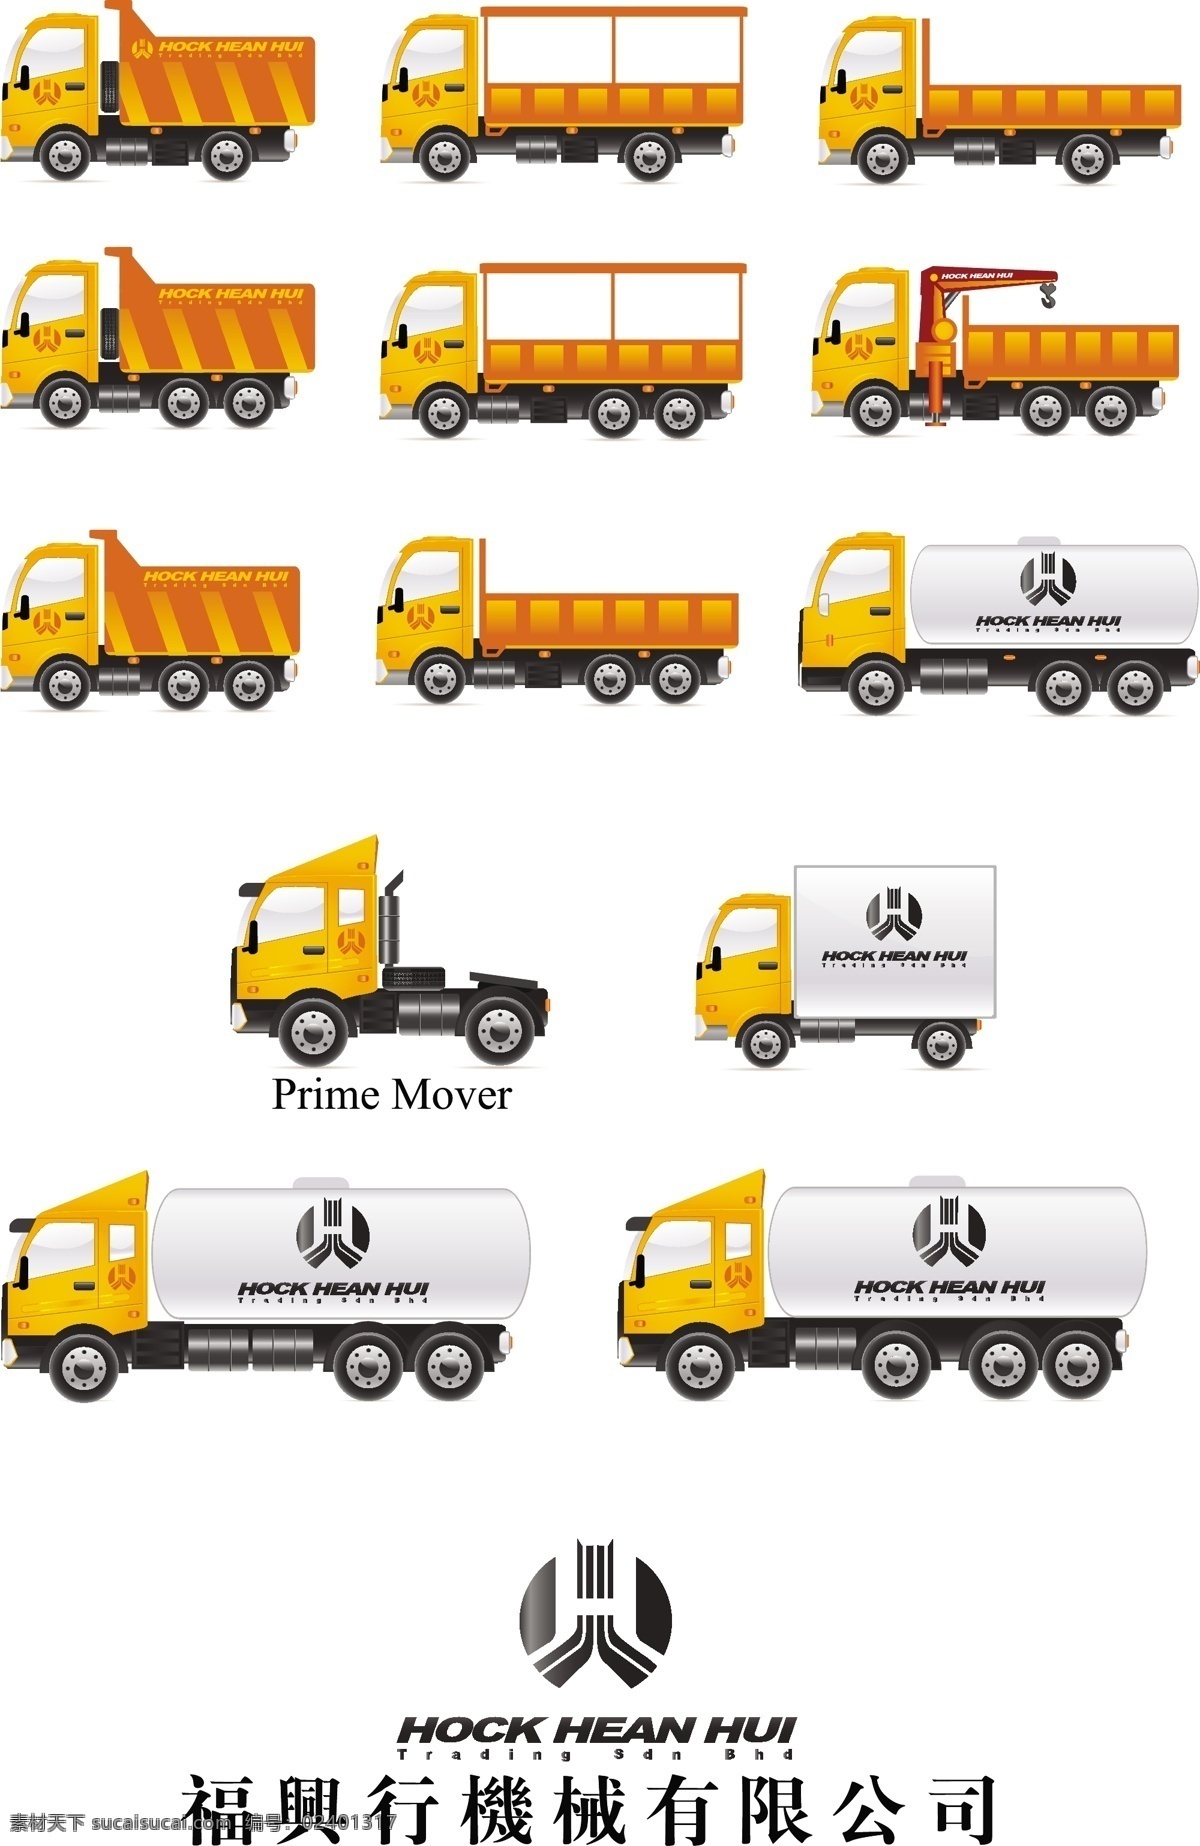 卡车 矢量图 工程车 货运 交通工具 物流 现代科技 运输 卡车矢量图 耐用 矢量 psd源文件